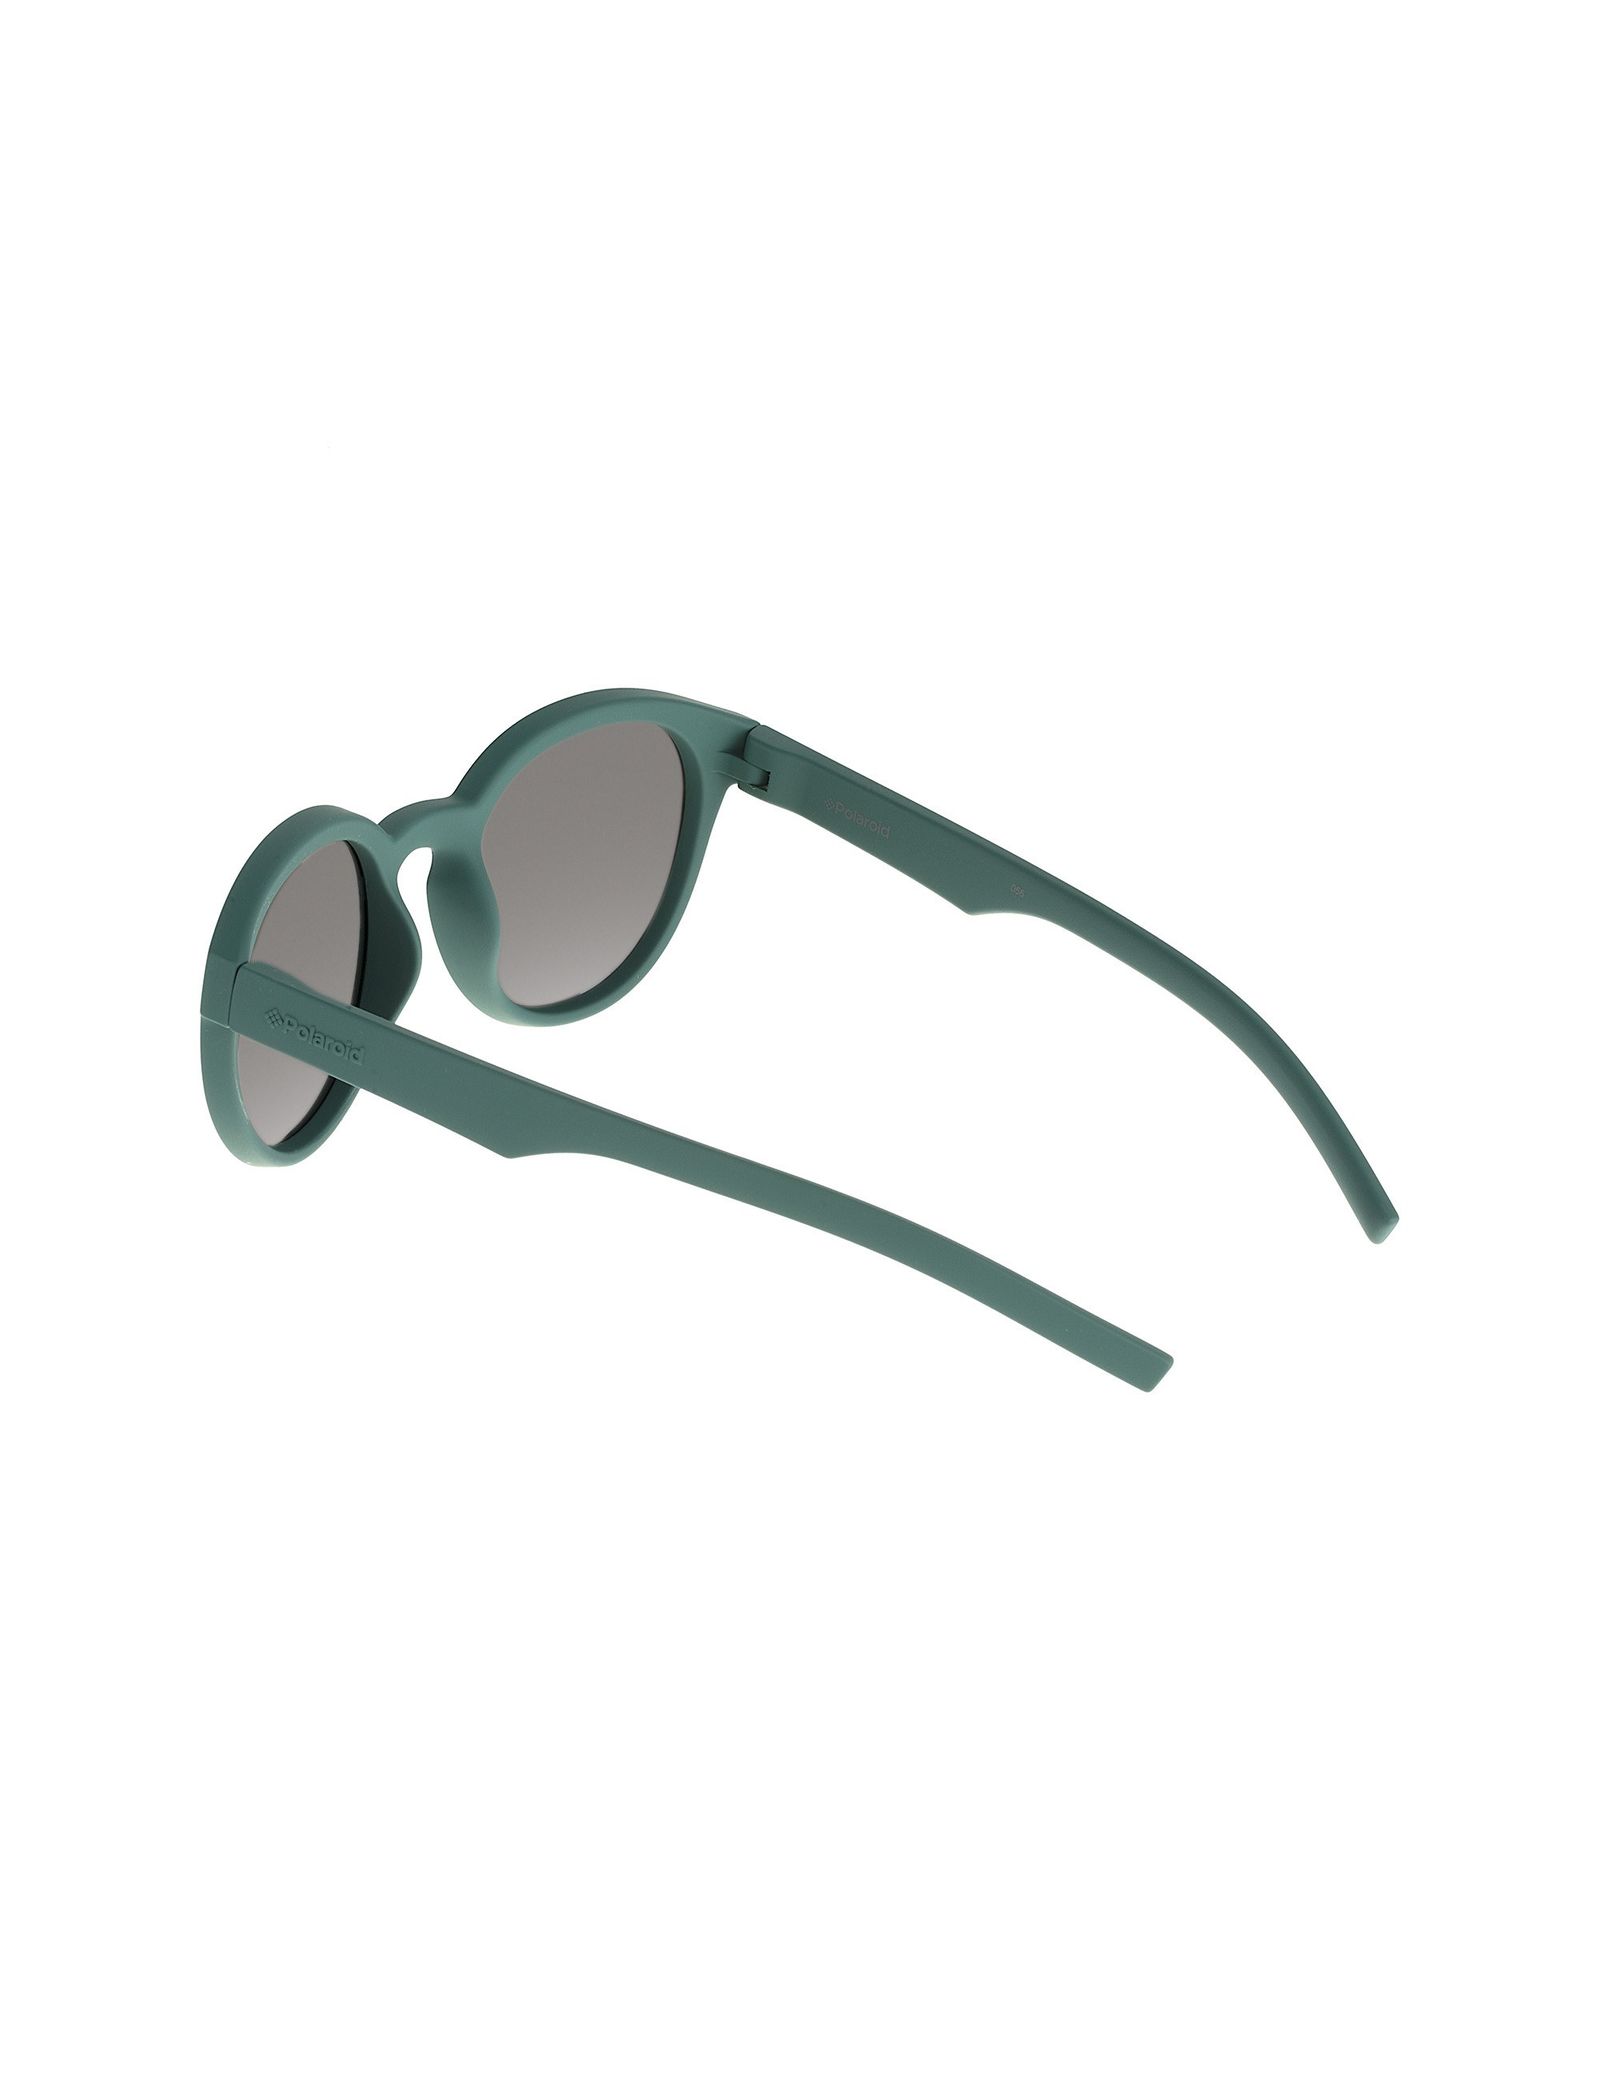 عینک آفتابی پنتوس بچگانه - پولاروید - سبز - 5